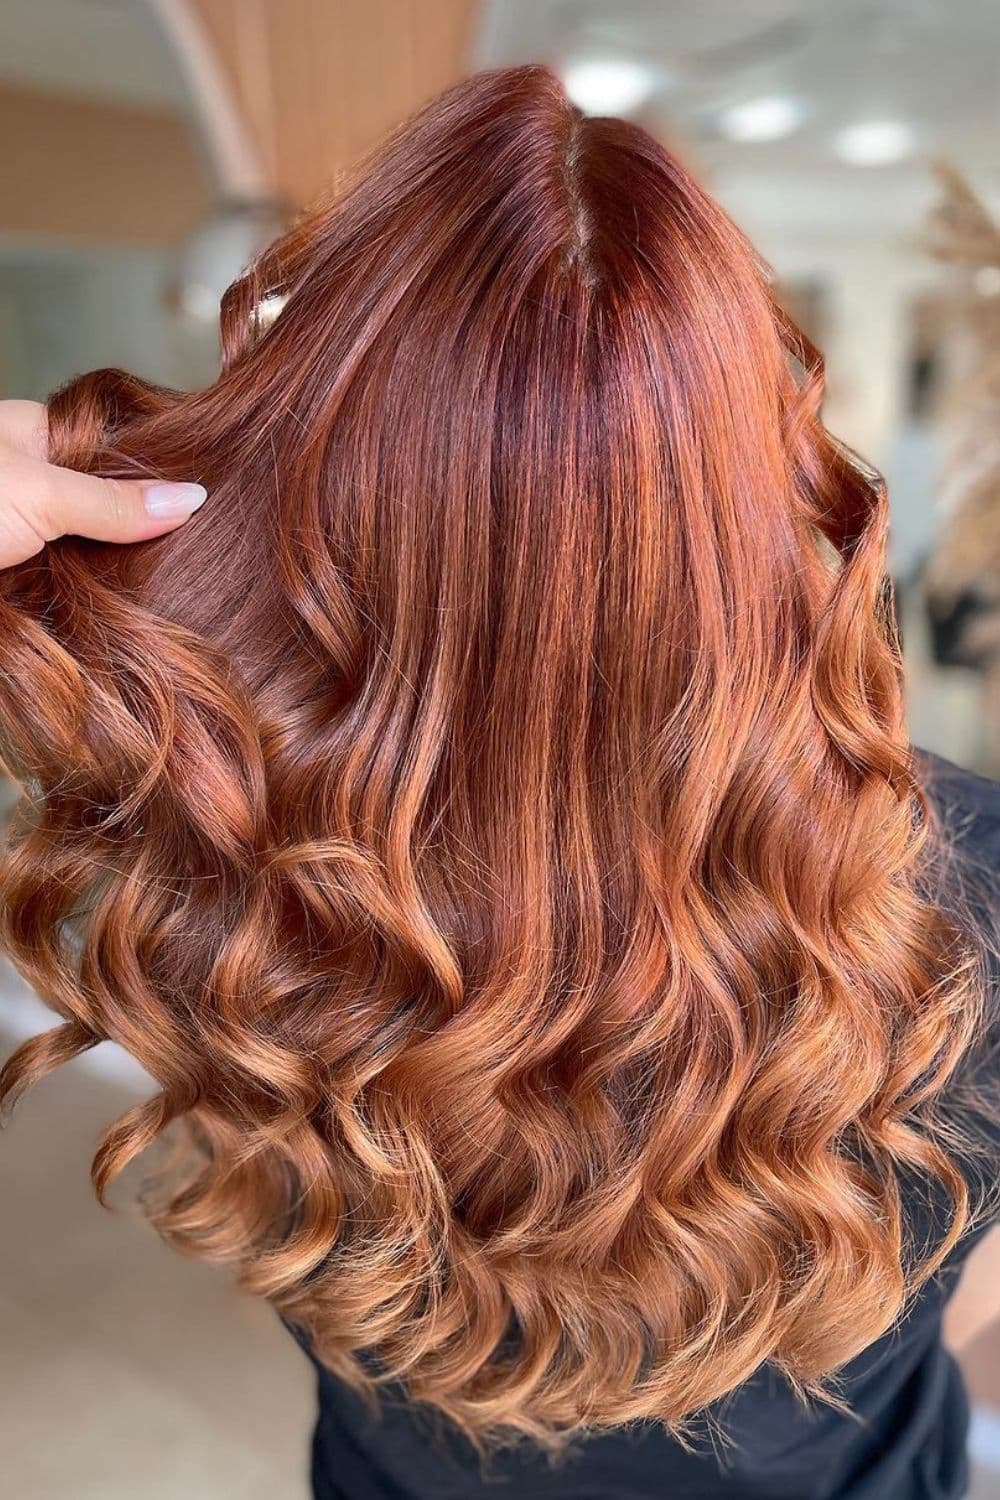 A woman with deep cinnamon hair.